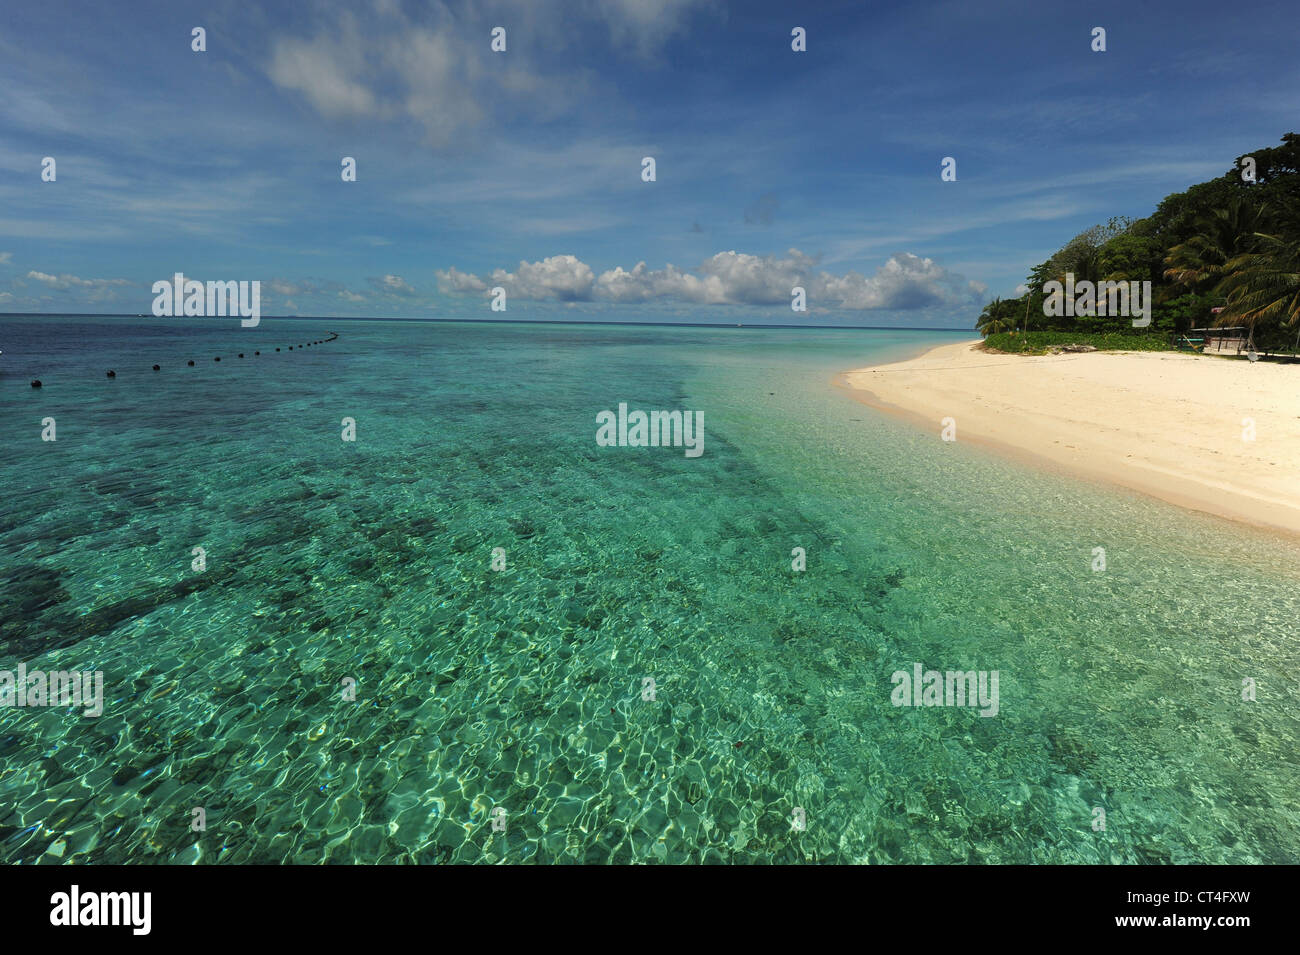 La Malesia, Borneo, Semporna arcipelago, Sipadan, idilliaca spiaggia con sabbia bianca e trasparente acqua turchese Foto Stock